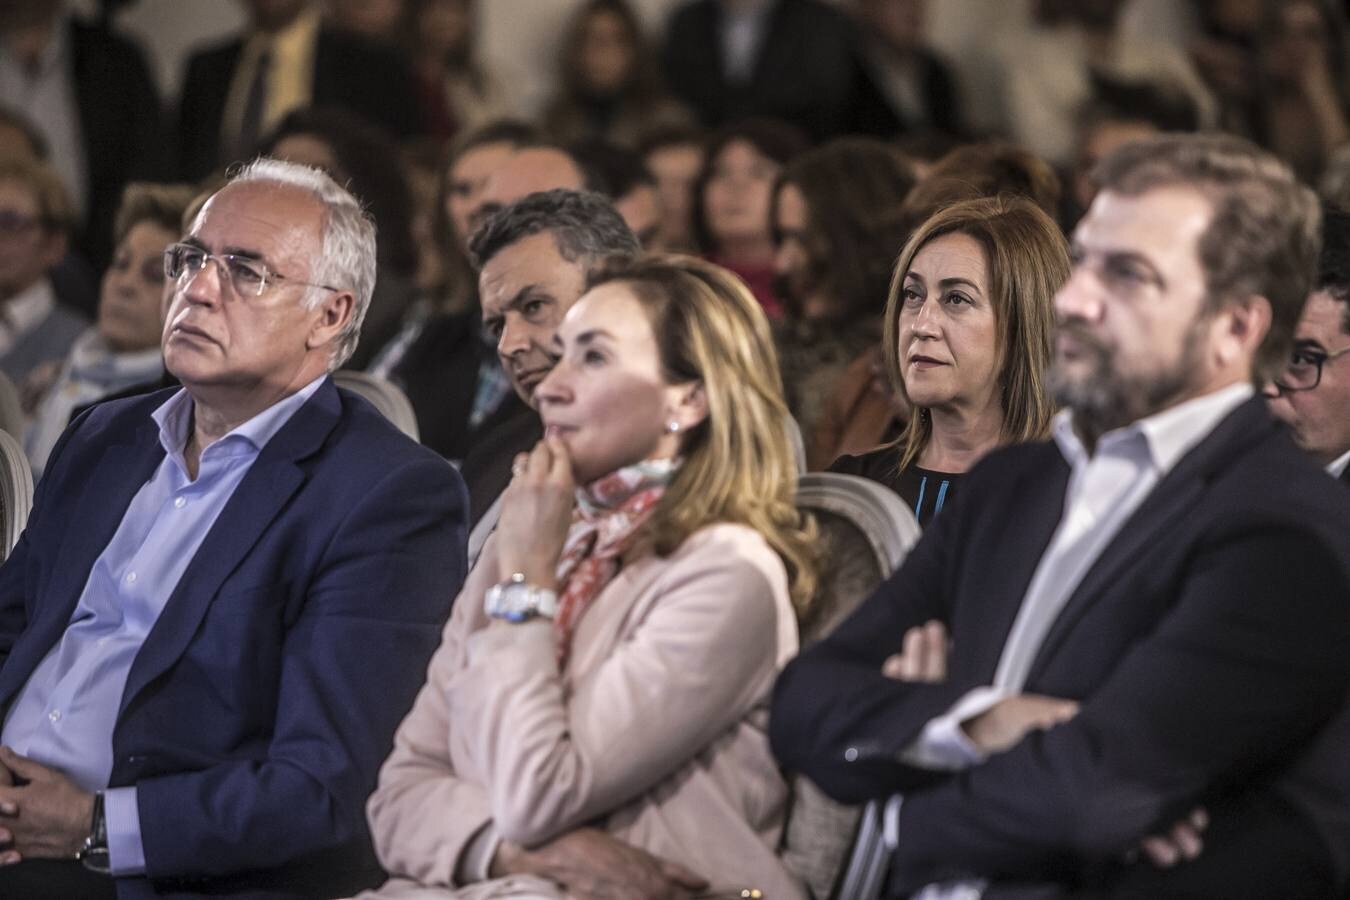 Fotos: Casado presenta en Logroño a los candidatos para las alcaldías de las cabeceras de comarca